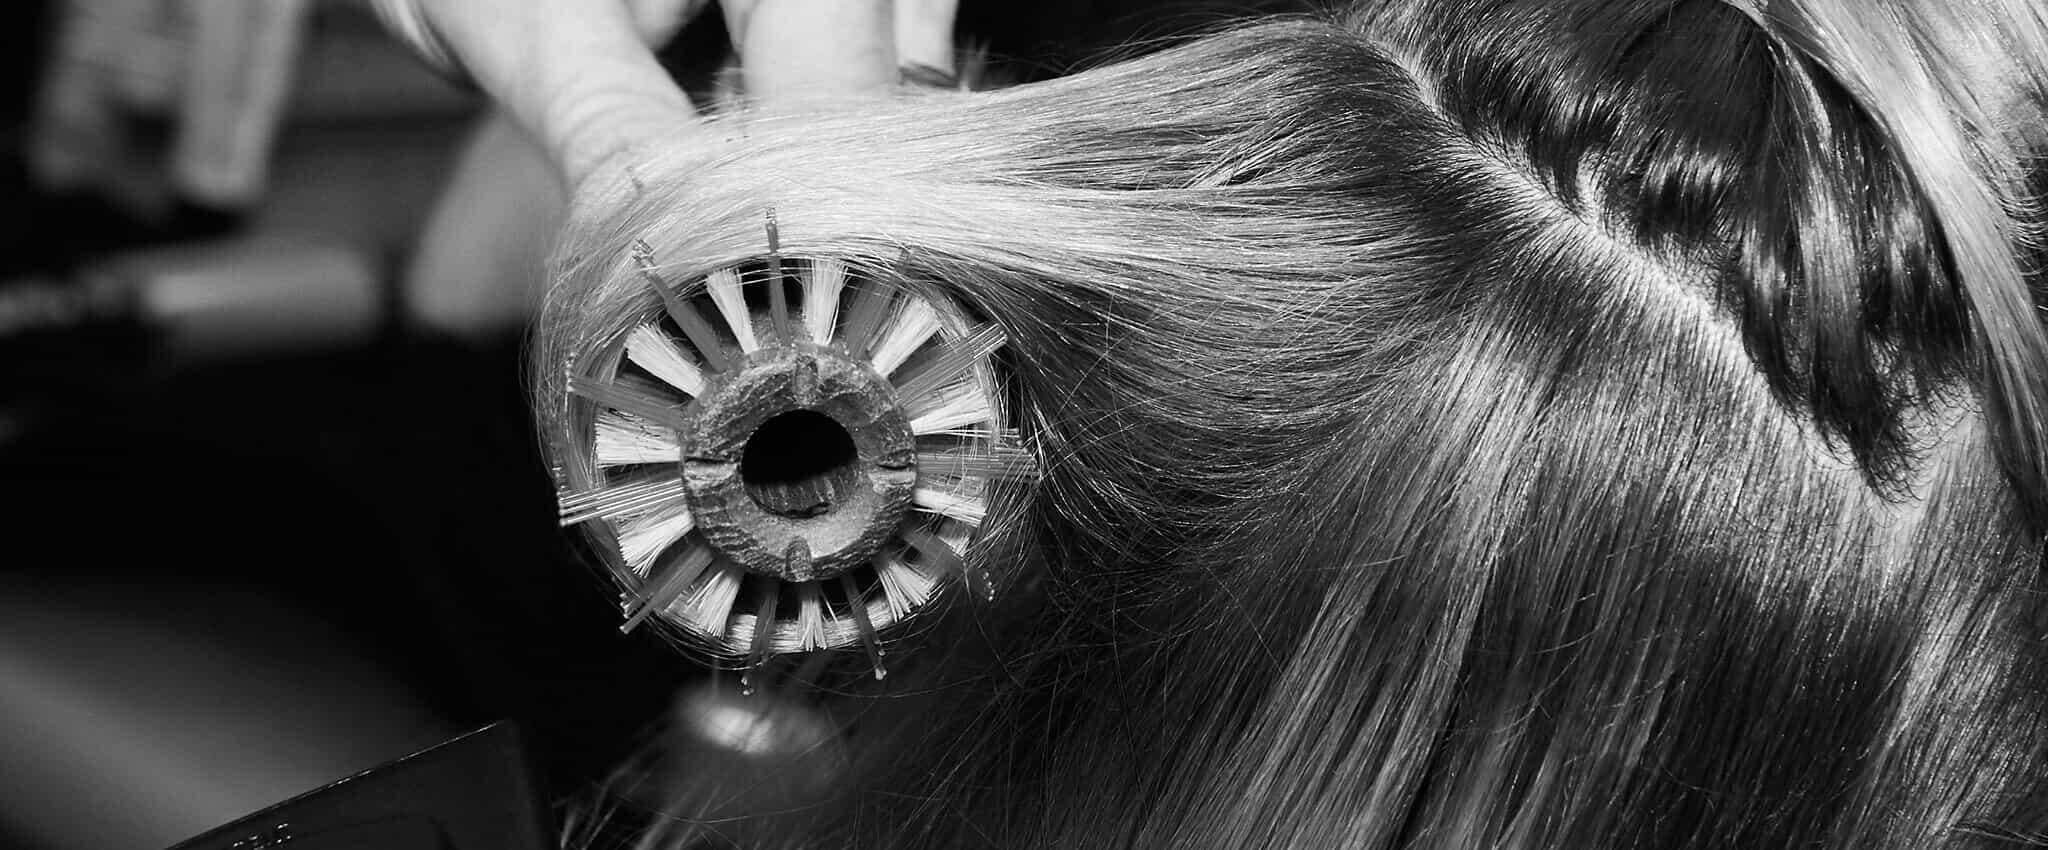 Primer plano del cabello delgado de una modelo al que están peinando con un cepillo y secadora.